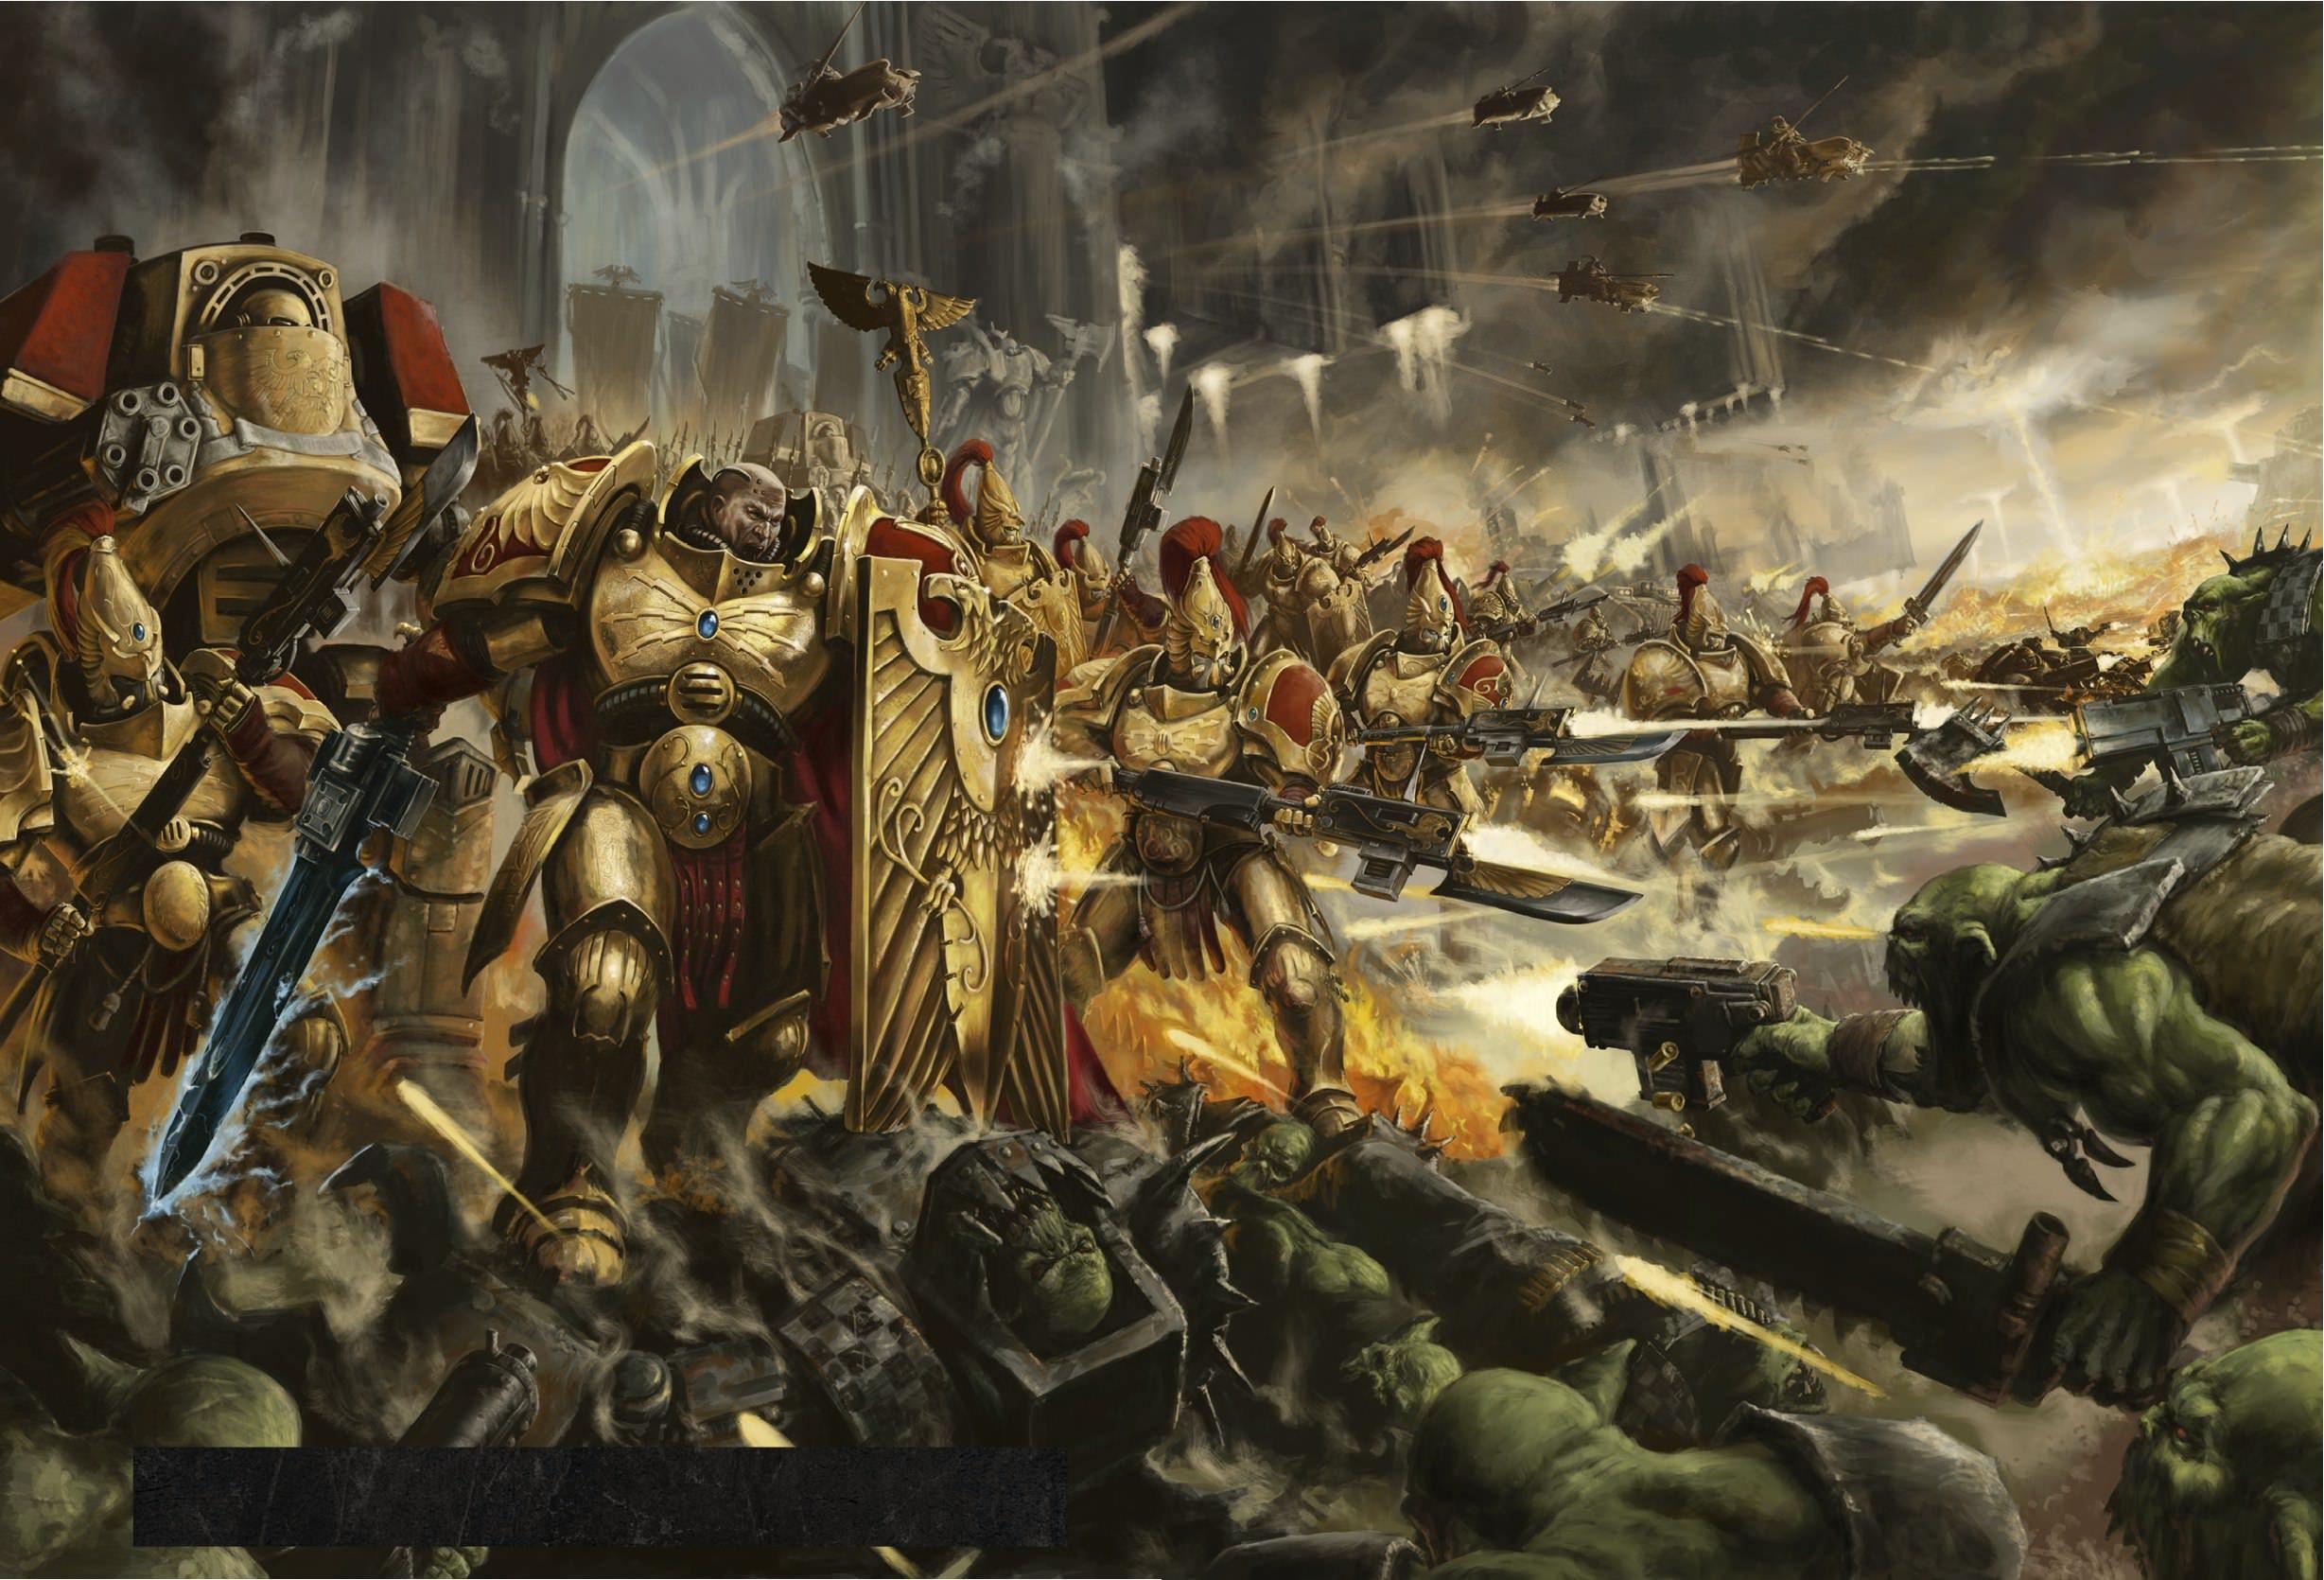 Warhammer 40k fanart wallpaper by BenmoranArtist on DeviantArt